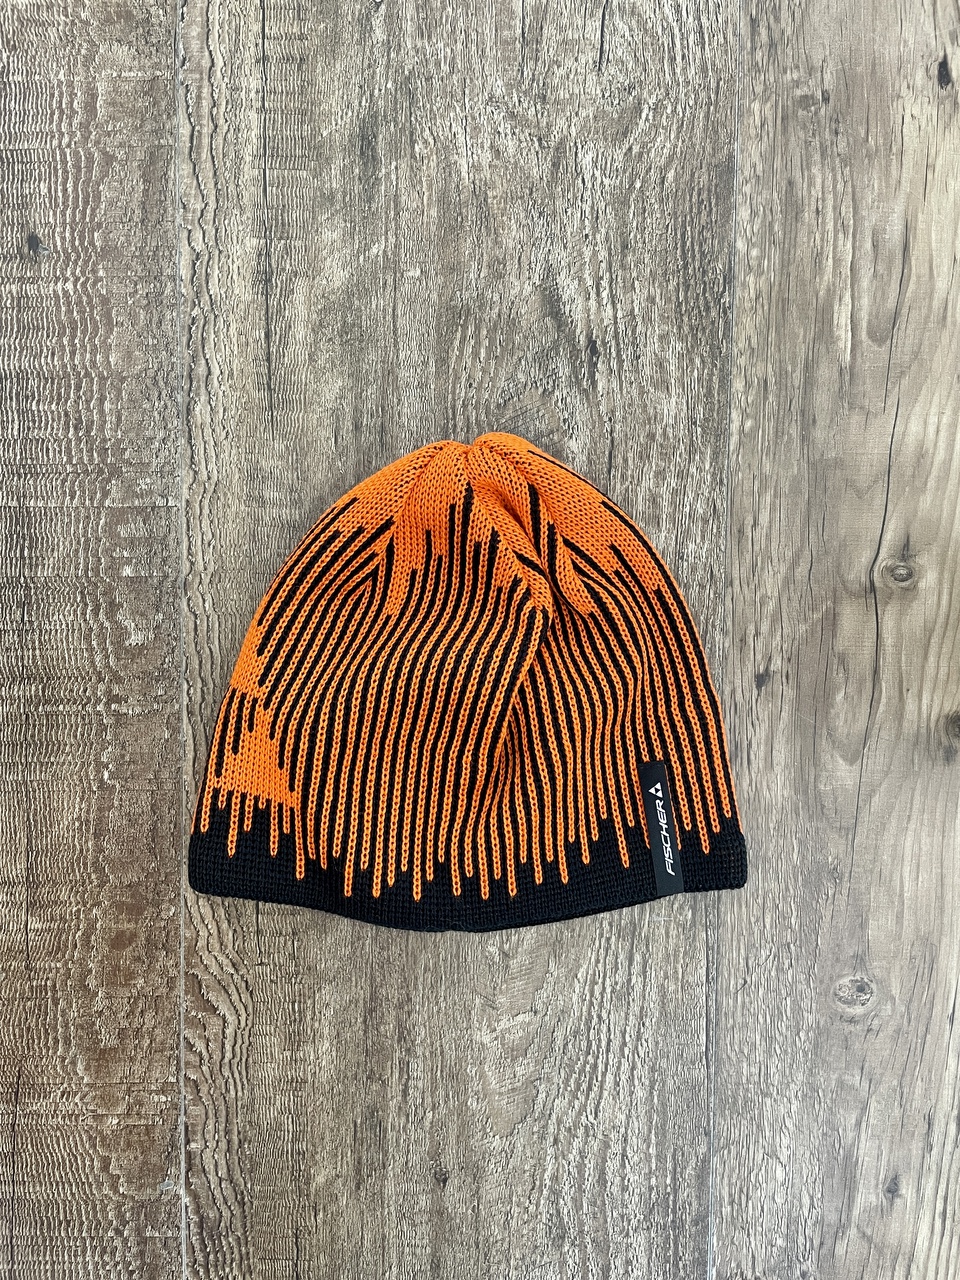 Fischer Hat - Bromont - black/orange